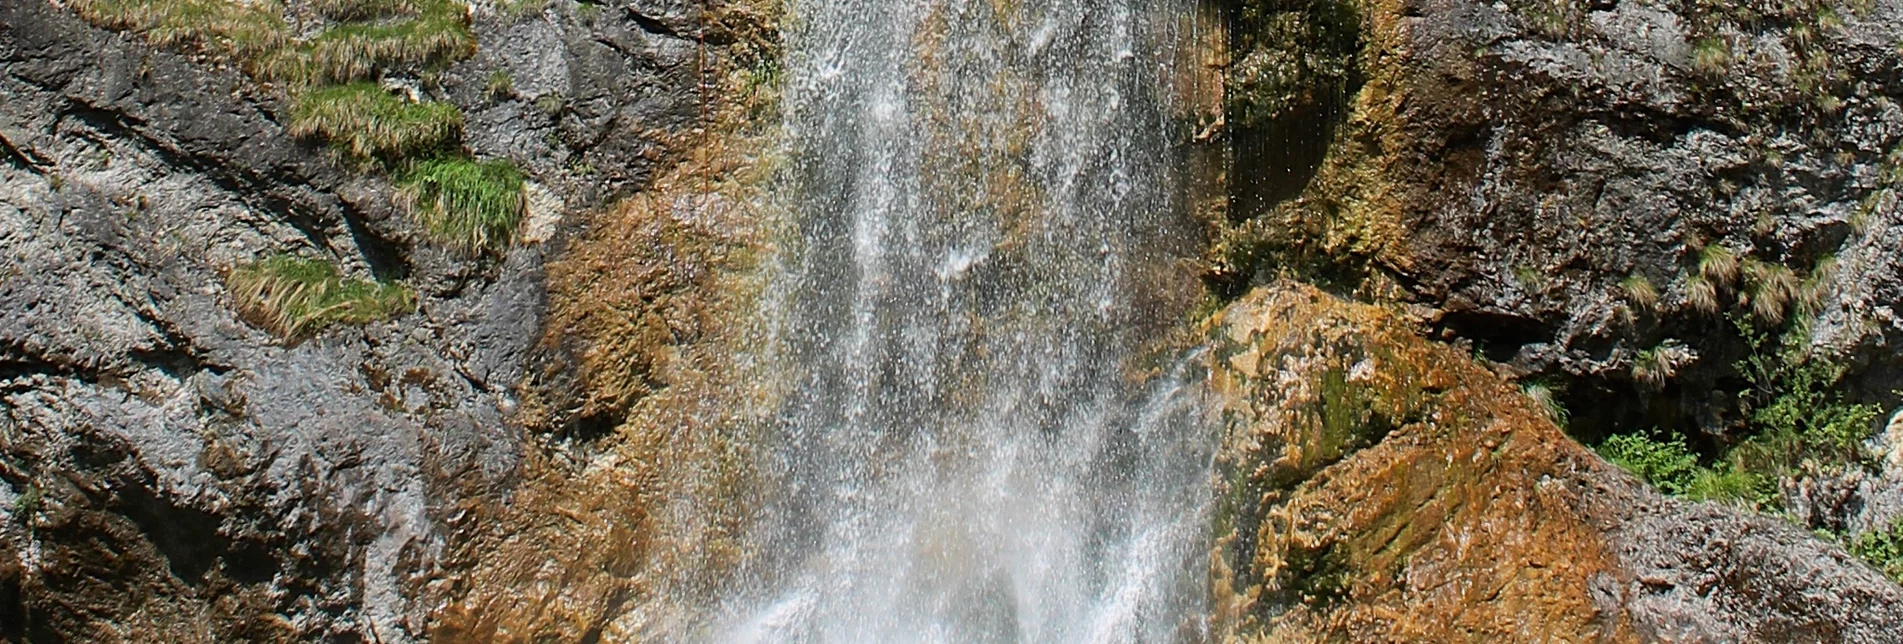 Regional hiking trail Salza Waterfall - Touren-Impression #1 | © Erlebnisregion Schladming-Dachstein